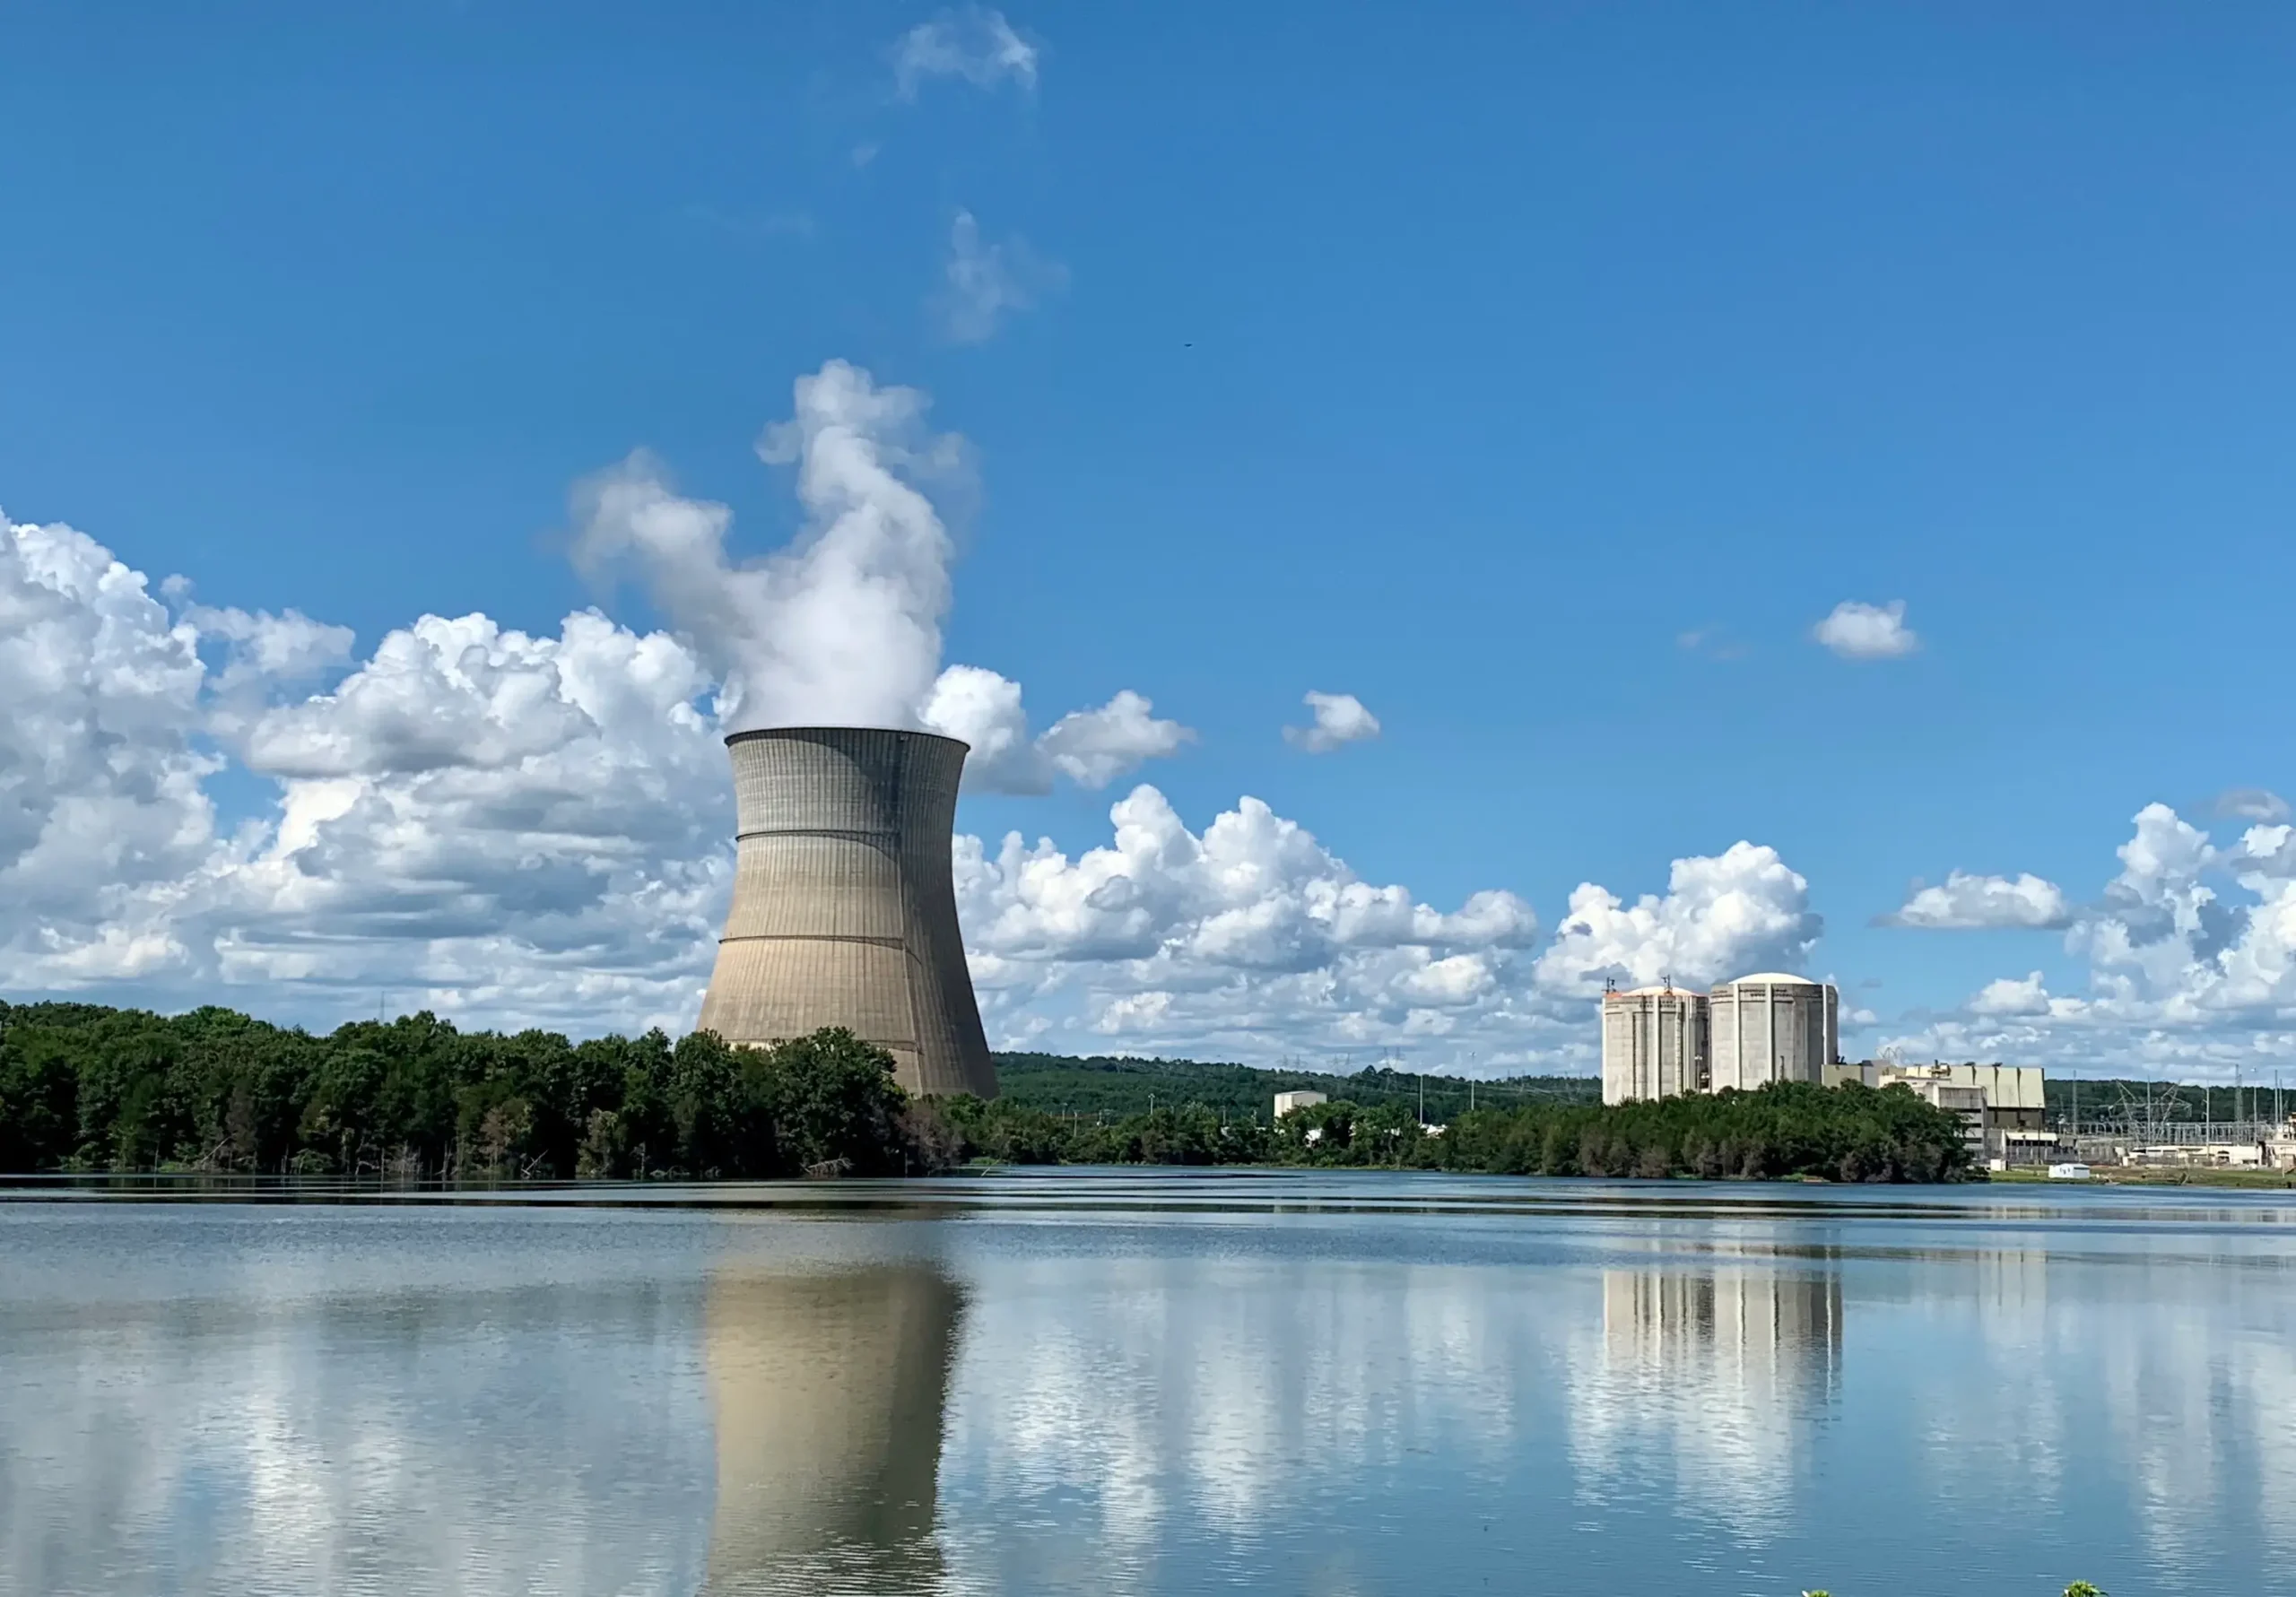 Spain confirms closure of nuclear plants, extends renewable project deadlines